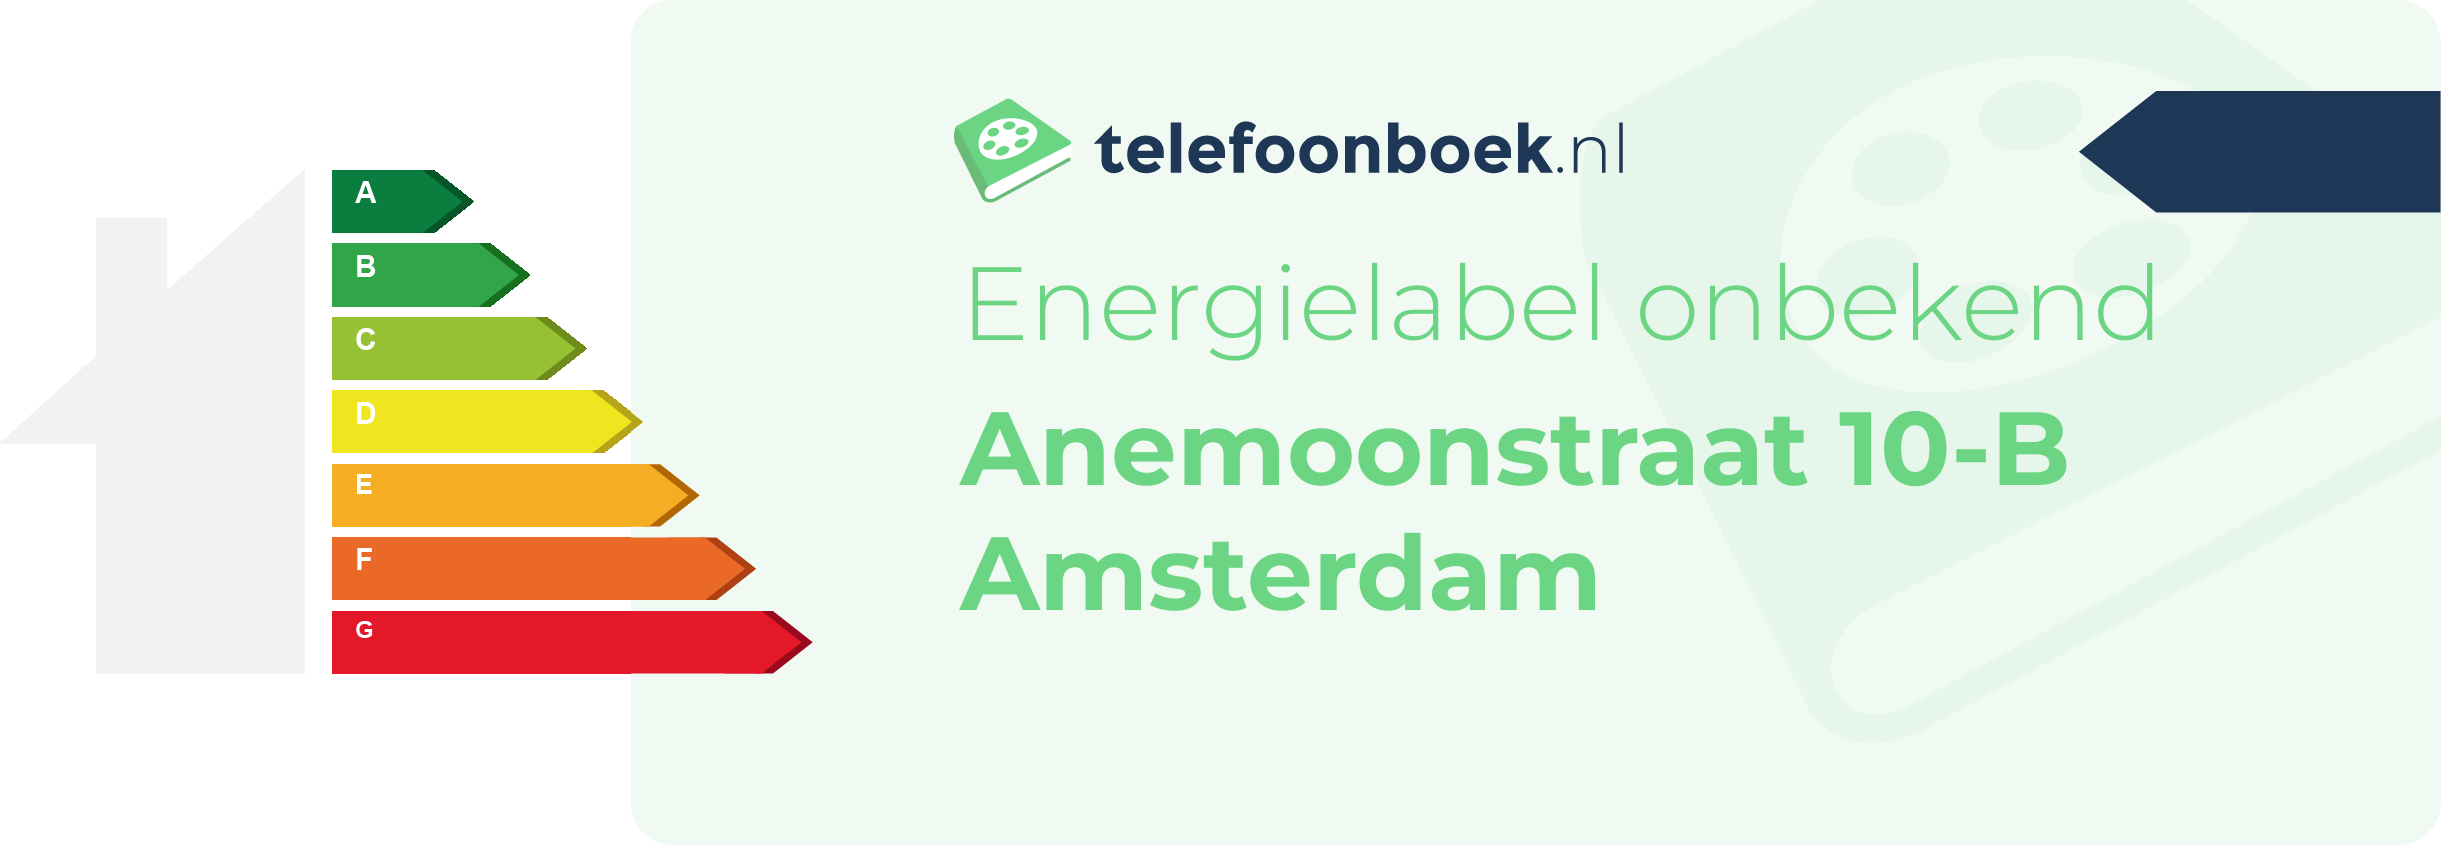 Energielabel Anemoonstraat 10-B Amsterdam